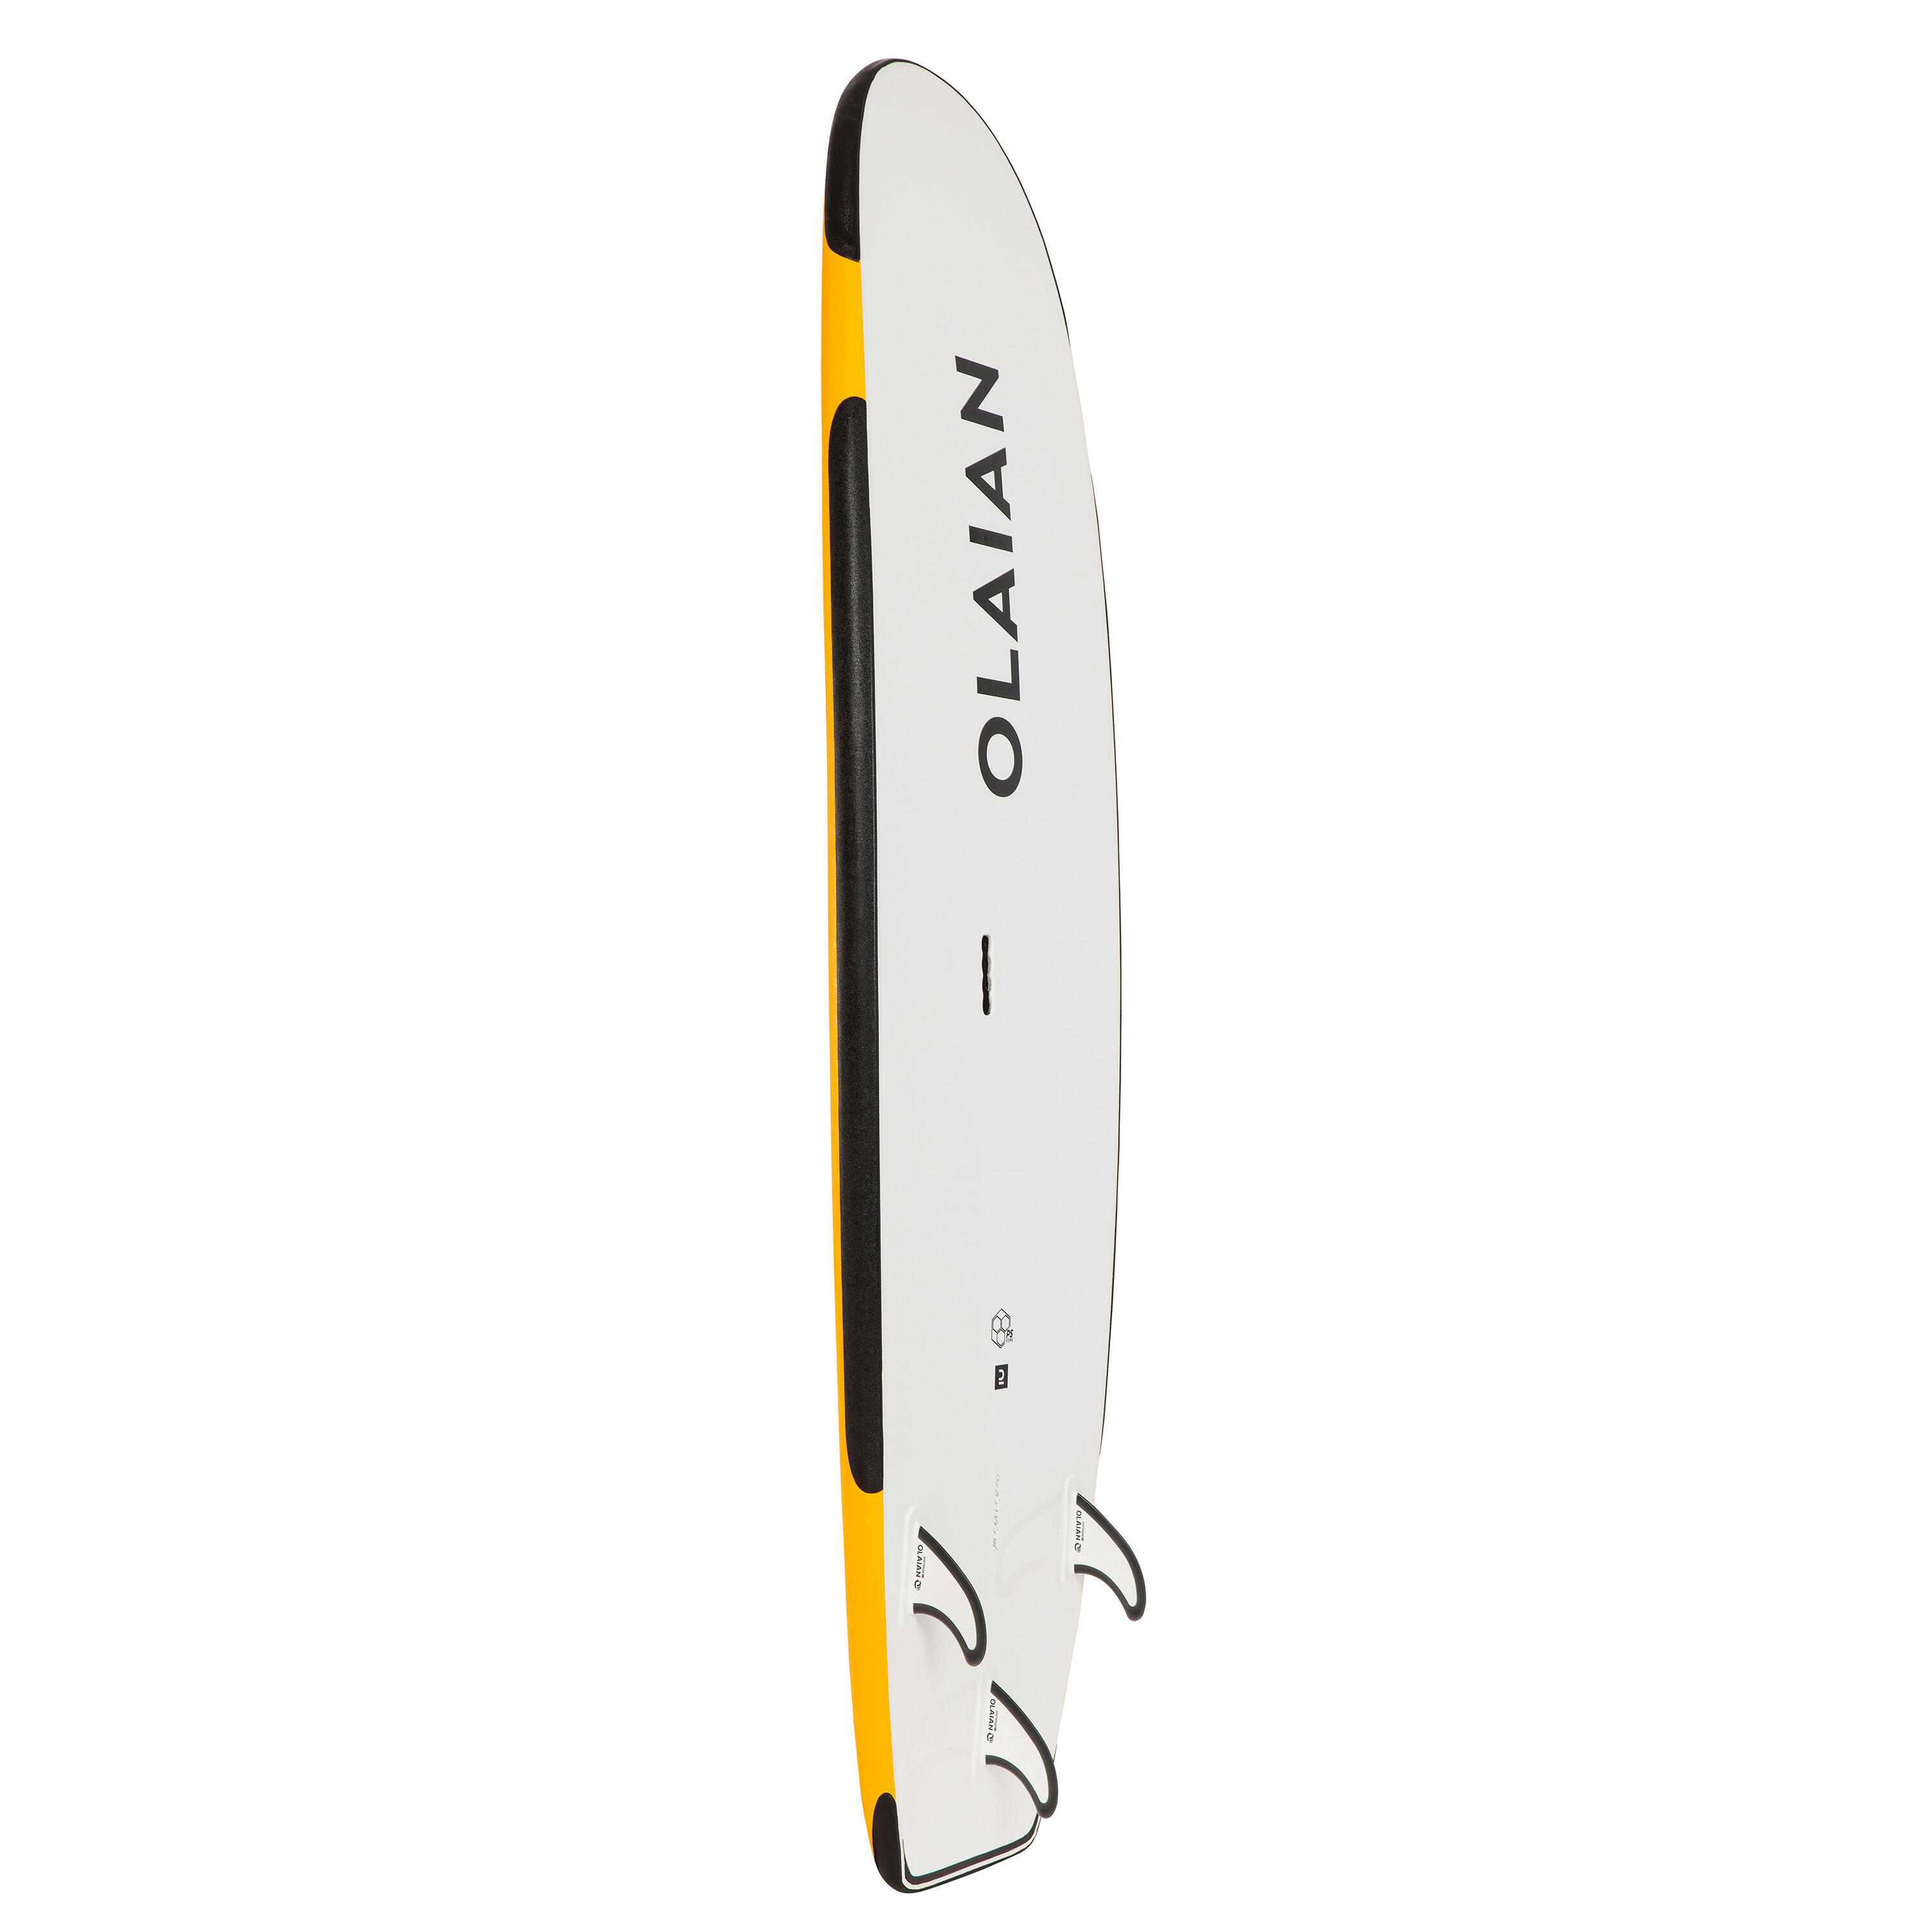 FOAM SURFBOARD 100 Reinforced 7'5" 84 L + Leash 6/14